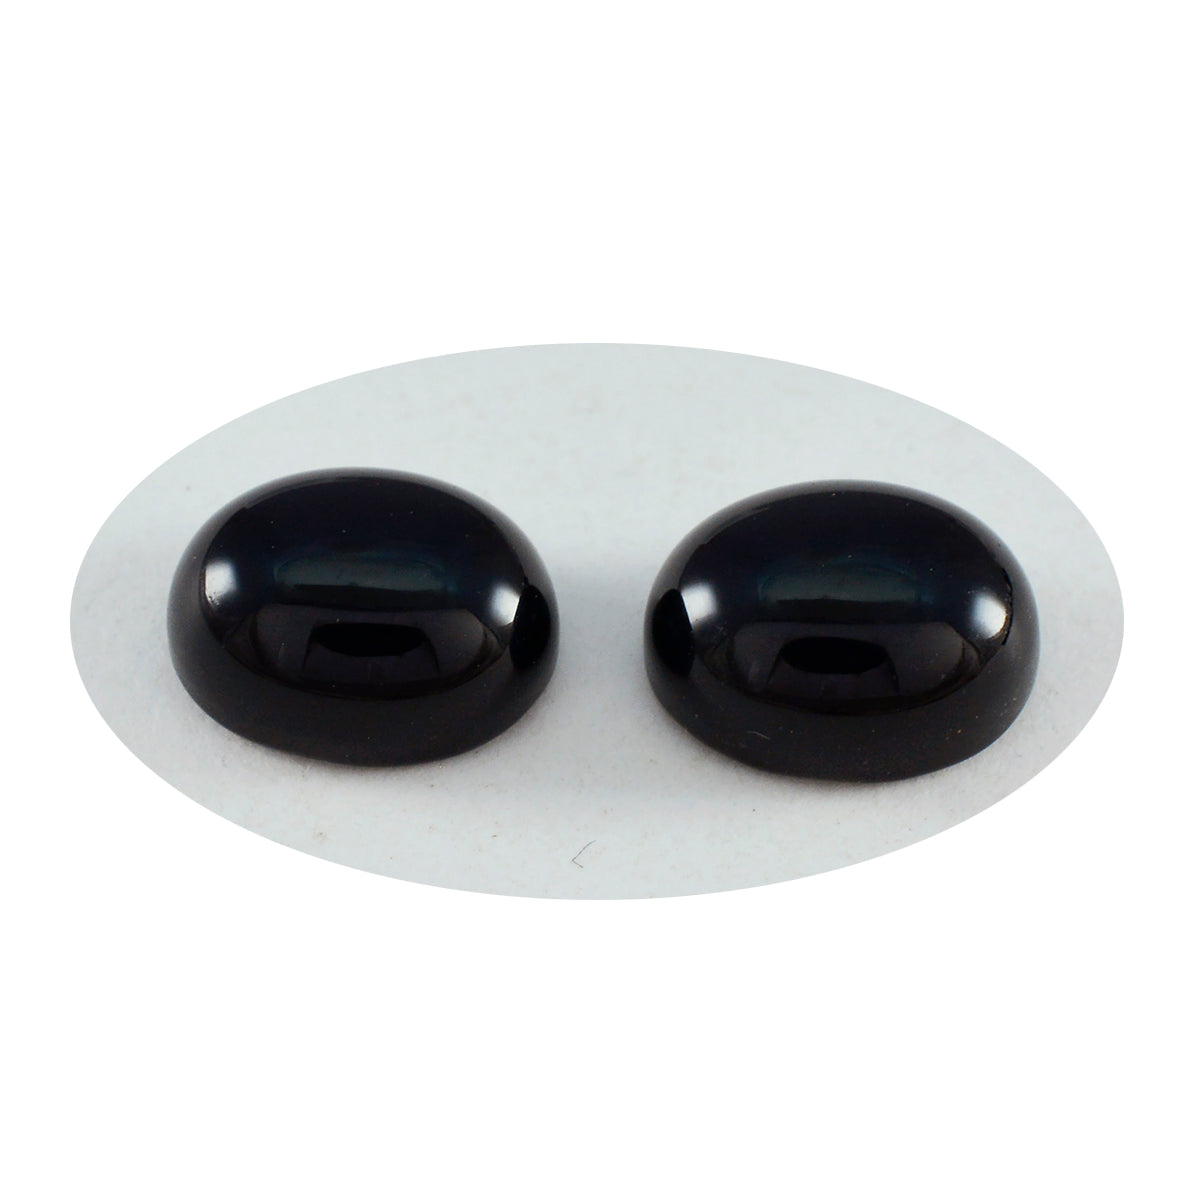 Riyogems 1 Stück schwarzer Onyx-Cabochon, 10 x 12 mm, ovale Form, Edelsteine von fantastischer Qualität